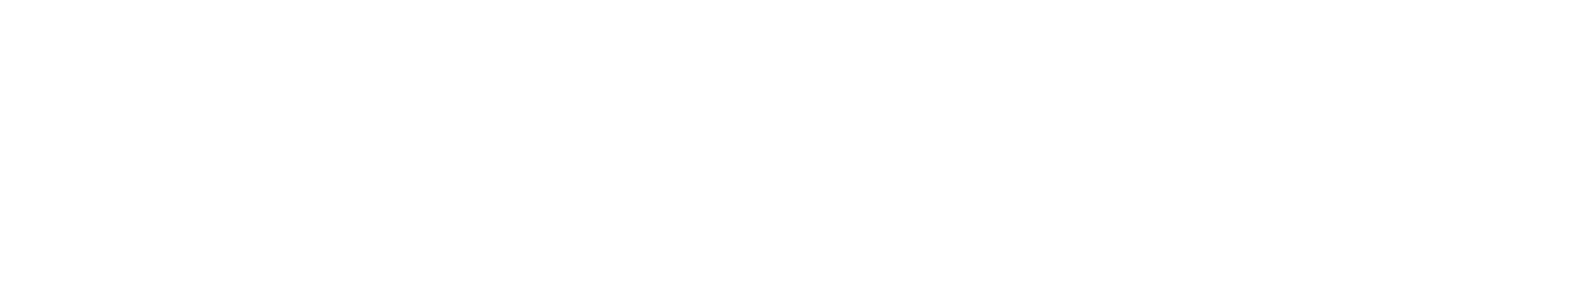 Xcel Energy logo large for dark backgrounds (transparent PNG)